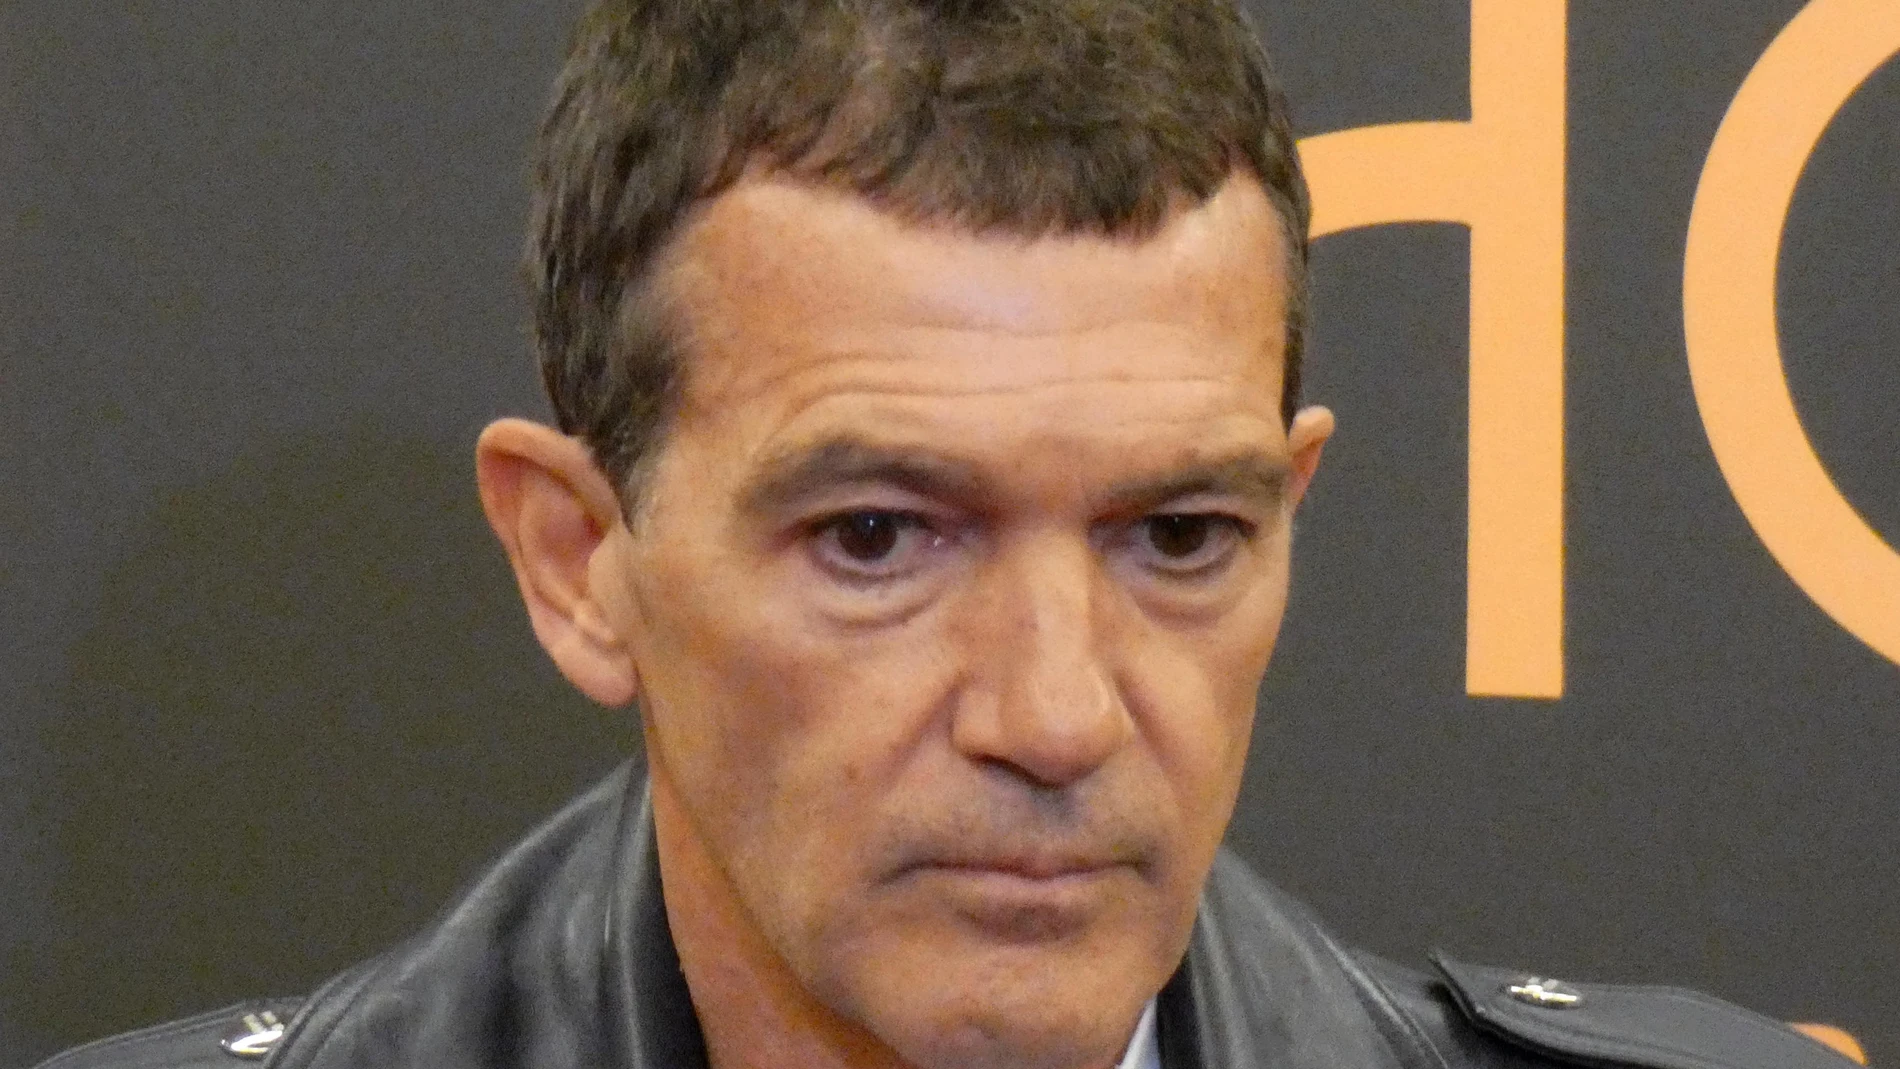 El actor y director malagueño Antonio Banderas